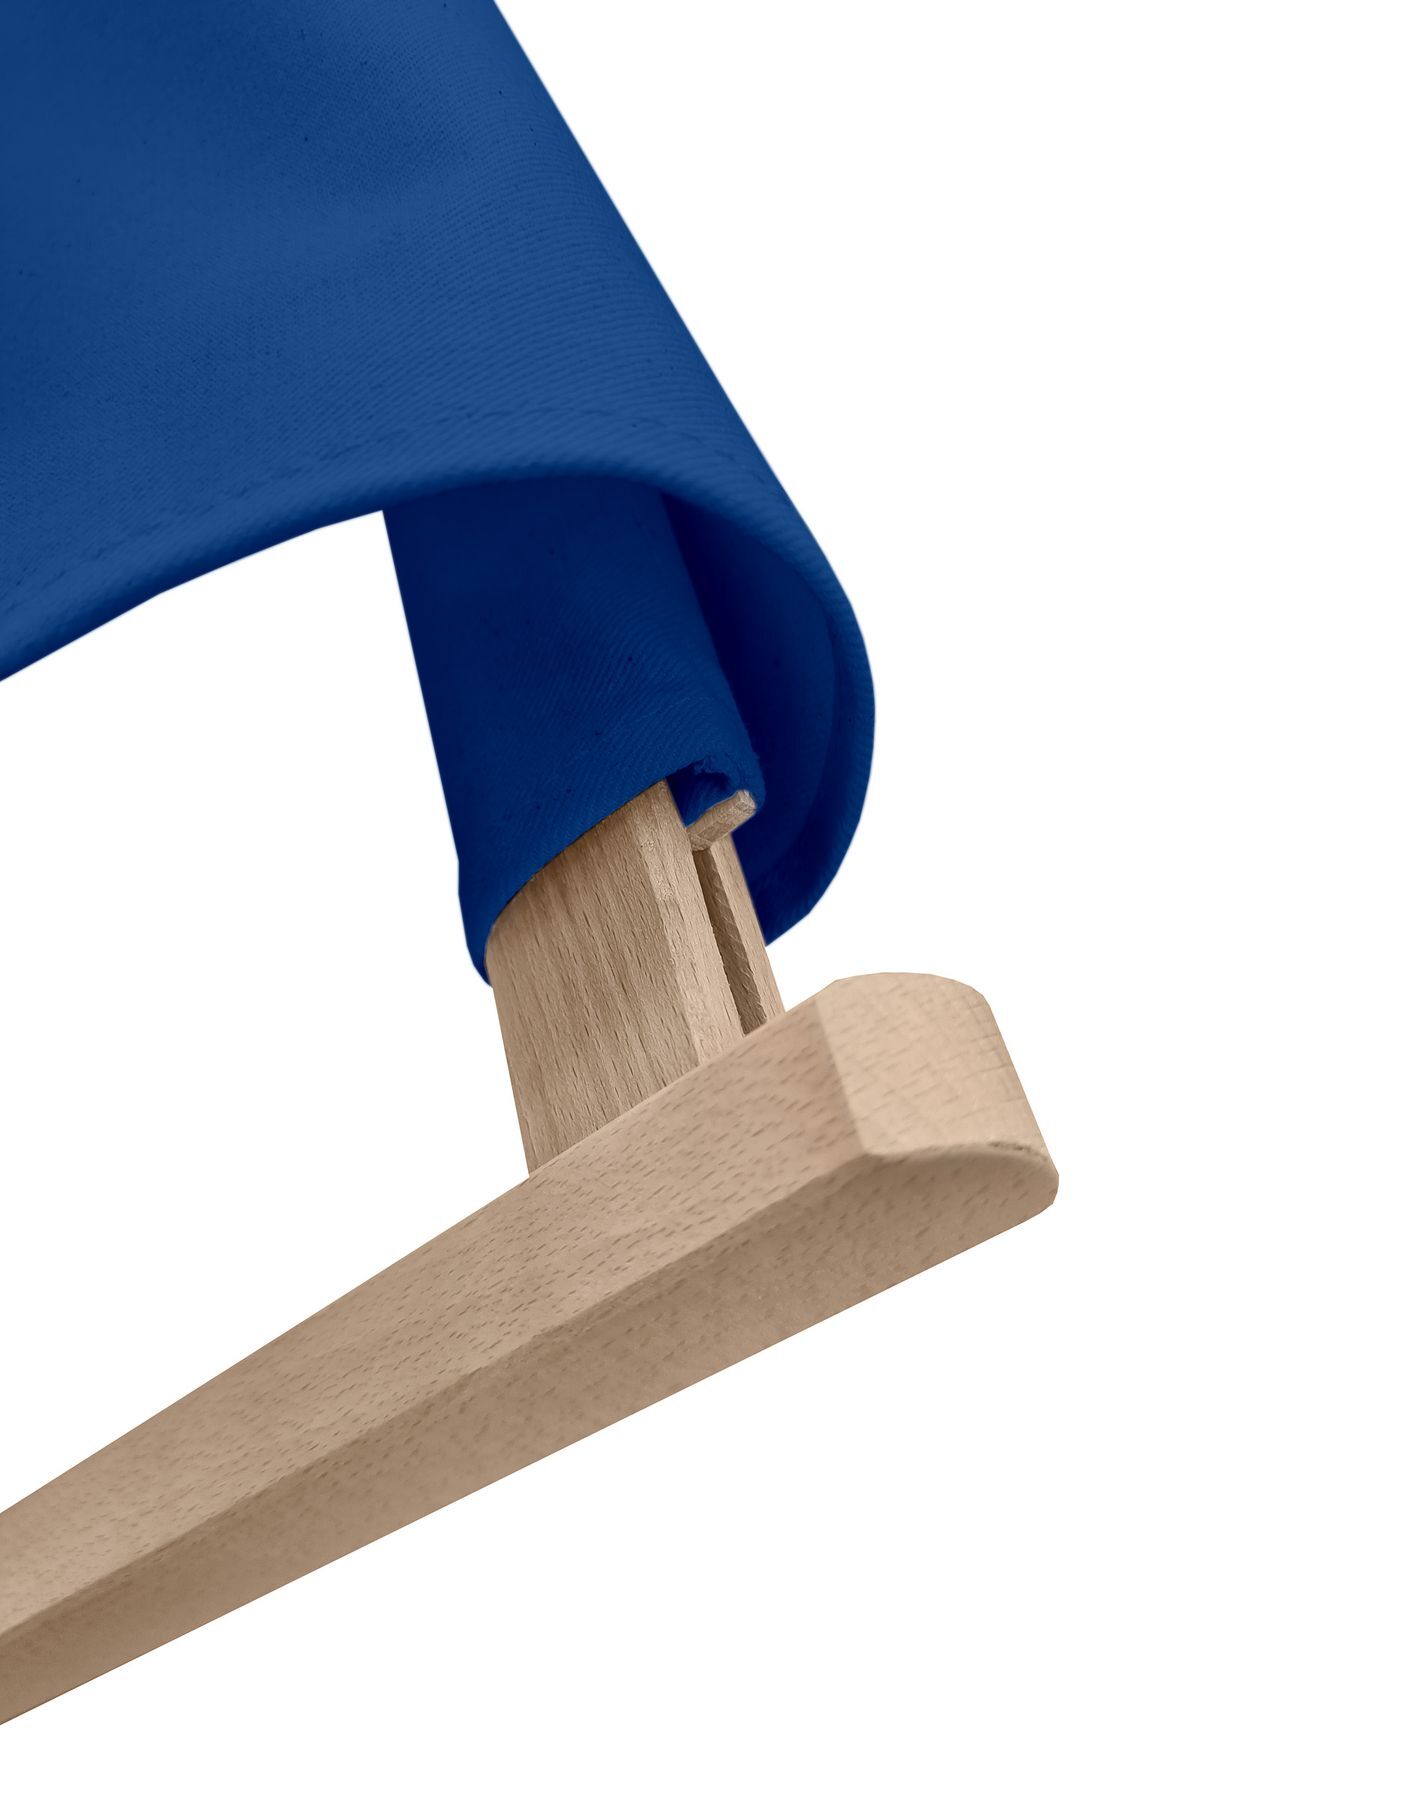 Detailbild des blauen Stoffs und Holzfarbe des Stuhls